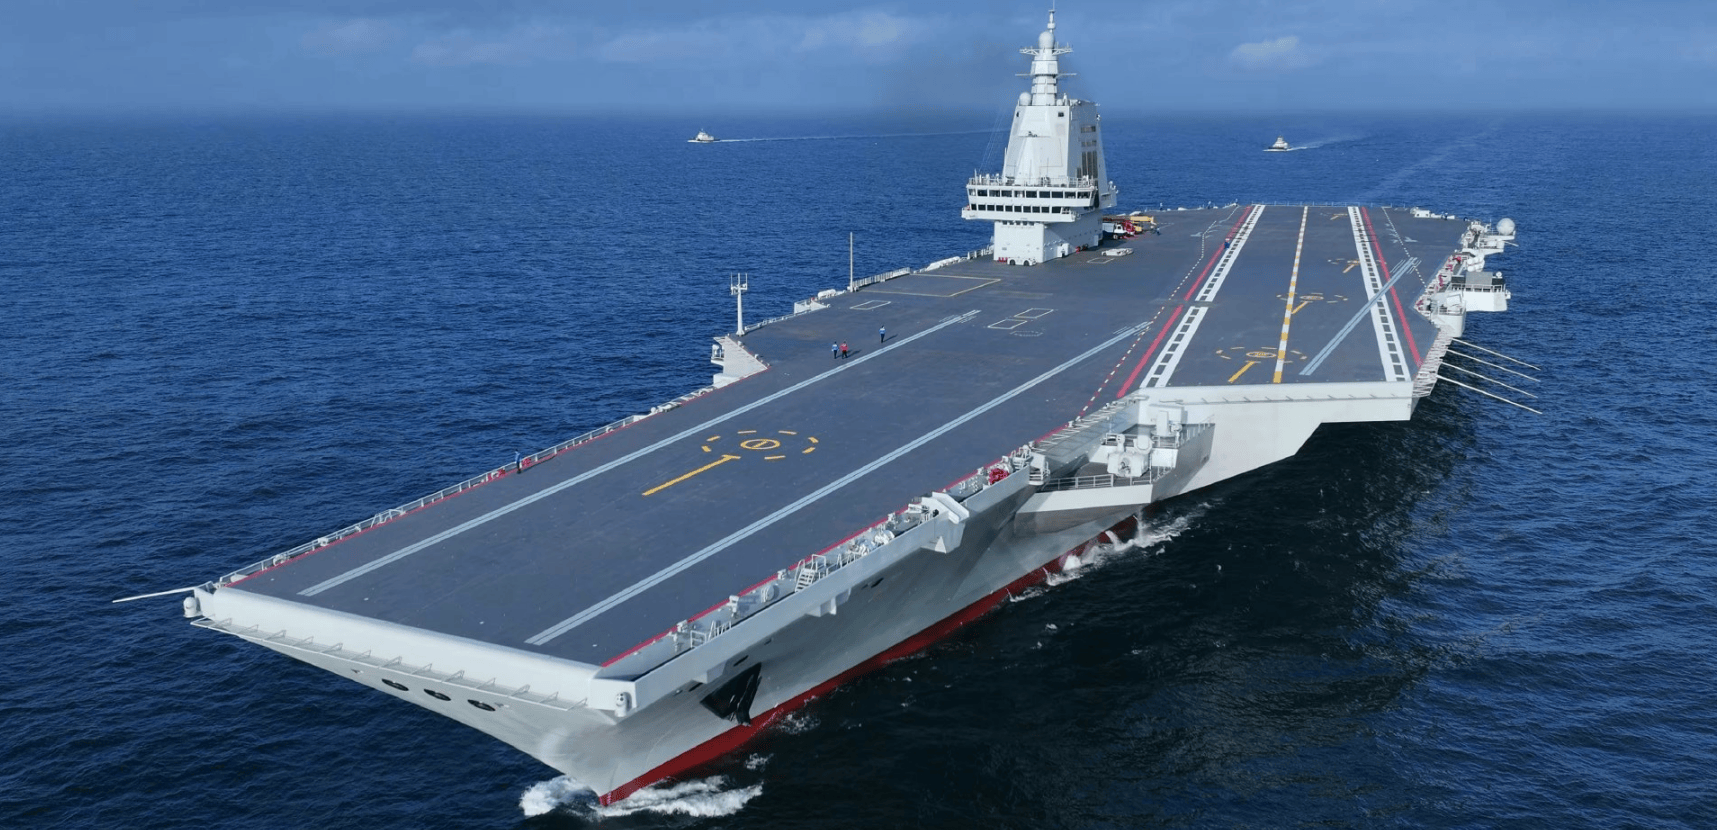 展望2025中国海军实力图片